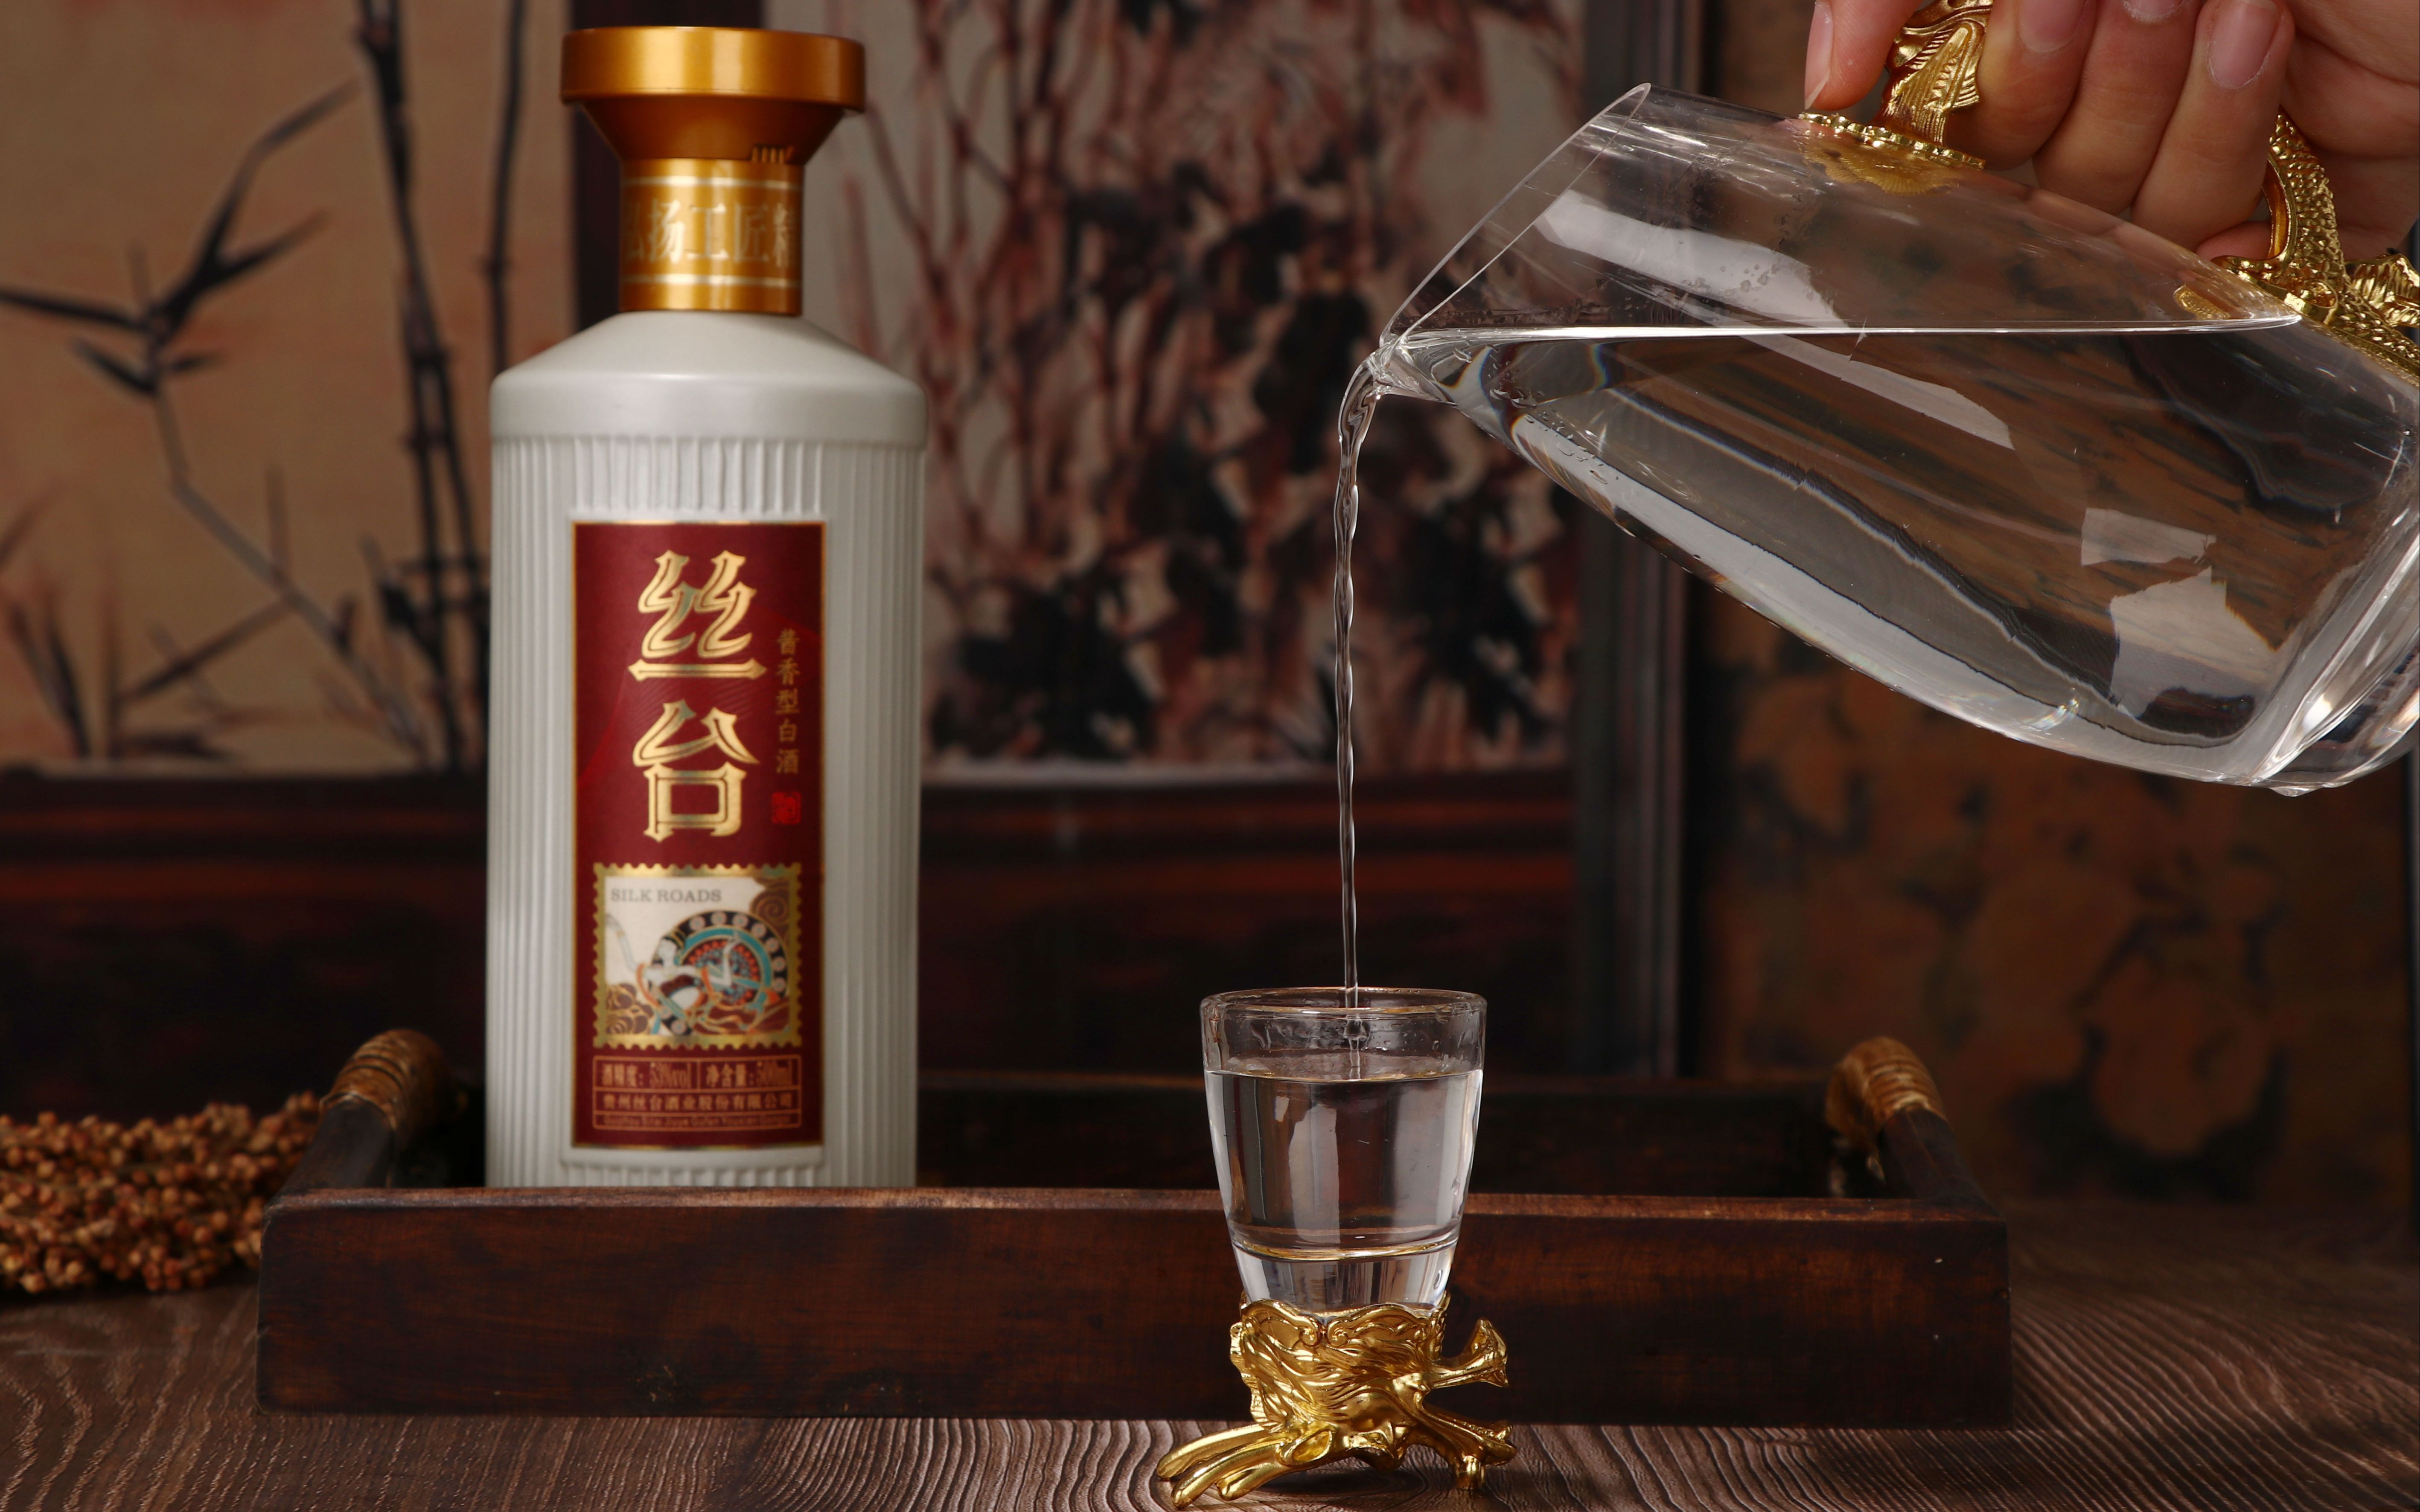 丝台酒业产品展示『尊贵版银丝台』,丝台酒的价格,酱香型53度,瓶身